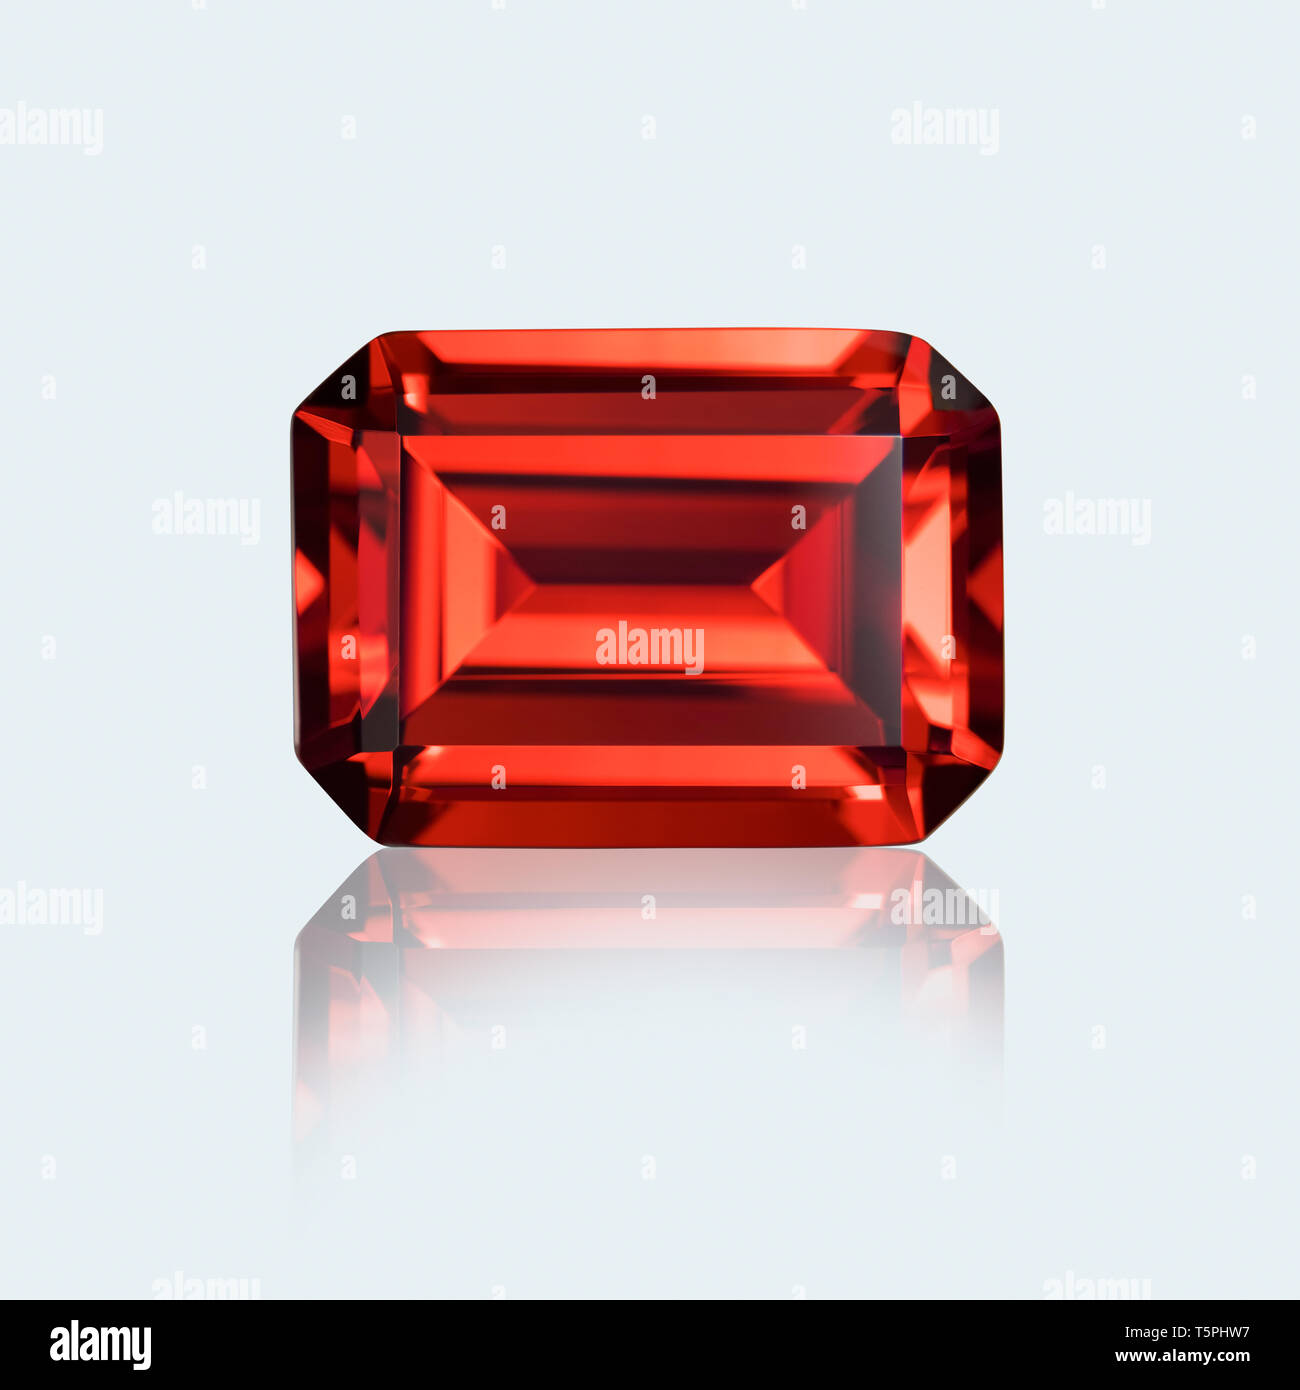 Garnet, ruby, Emerald cut, Emerald cut gemstone, Emerald cut ruby, Emerald cut garnet Stock Photo